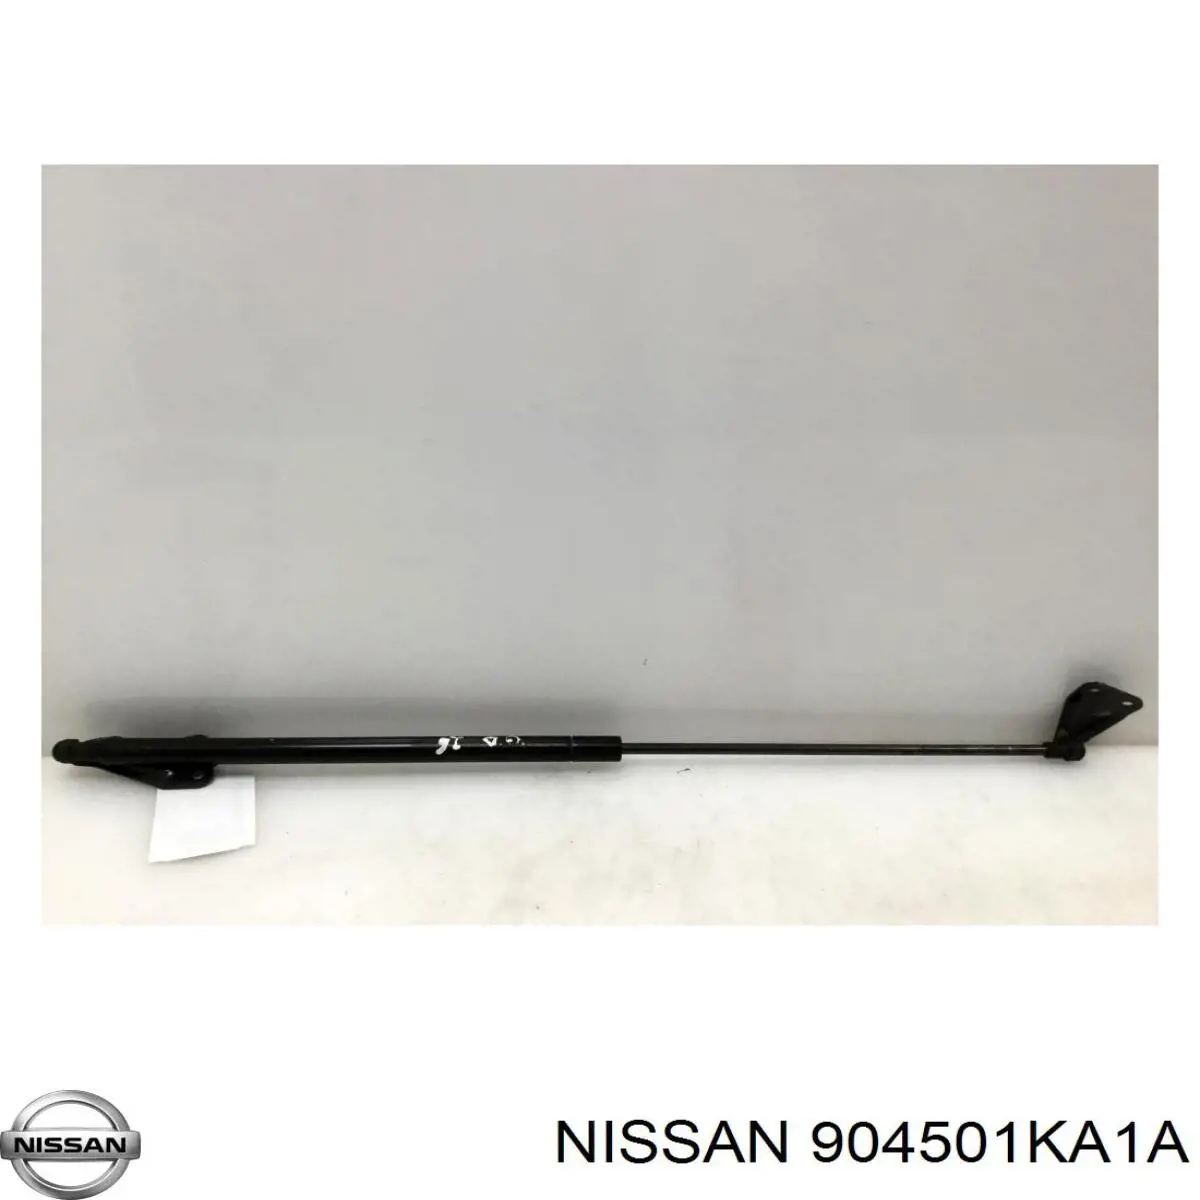 904501KA1A Nissan 